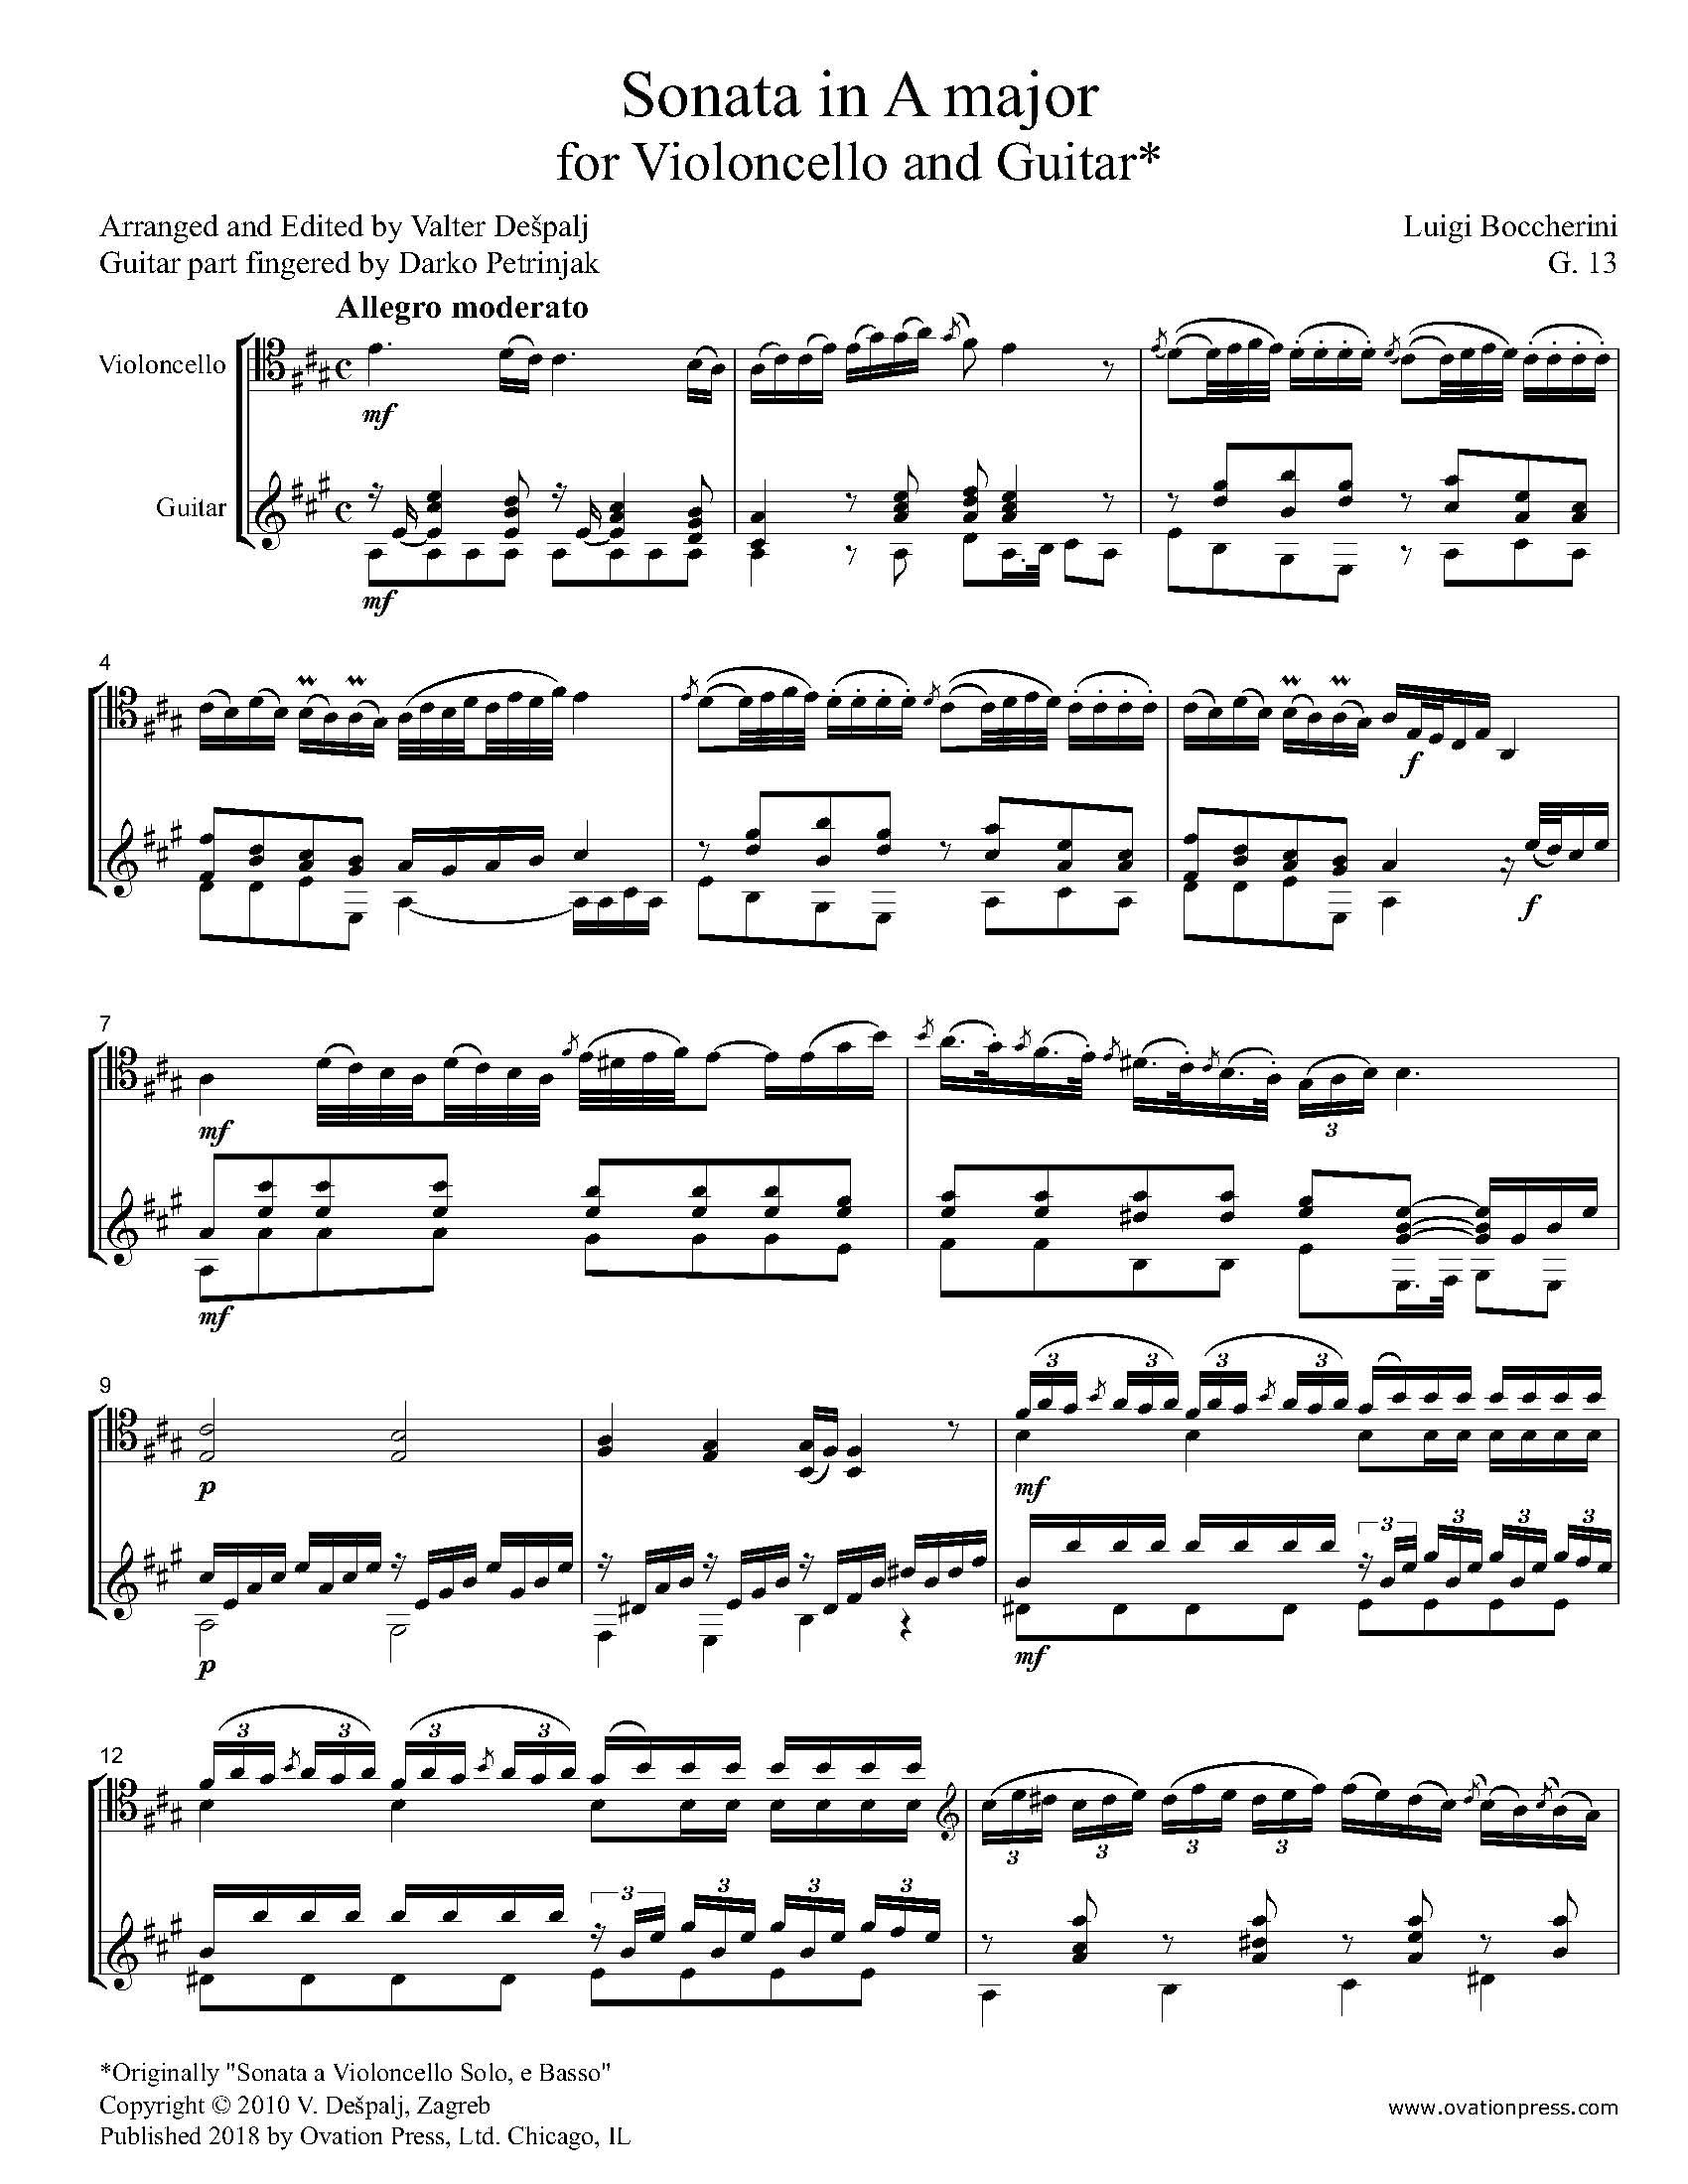 Boccherini Sonata in A Major G. 13 for Cello and Guitar